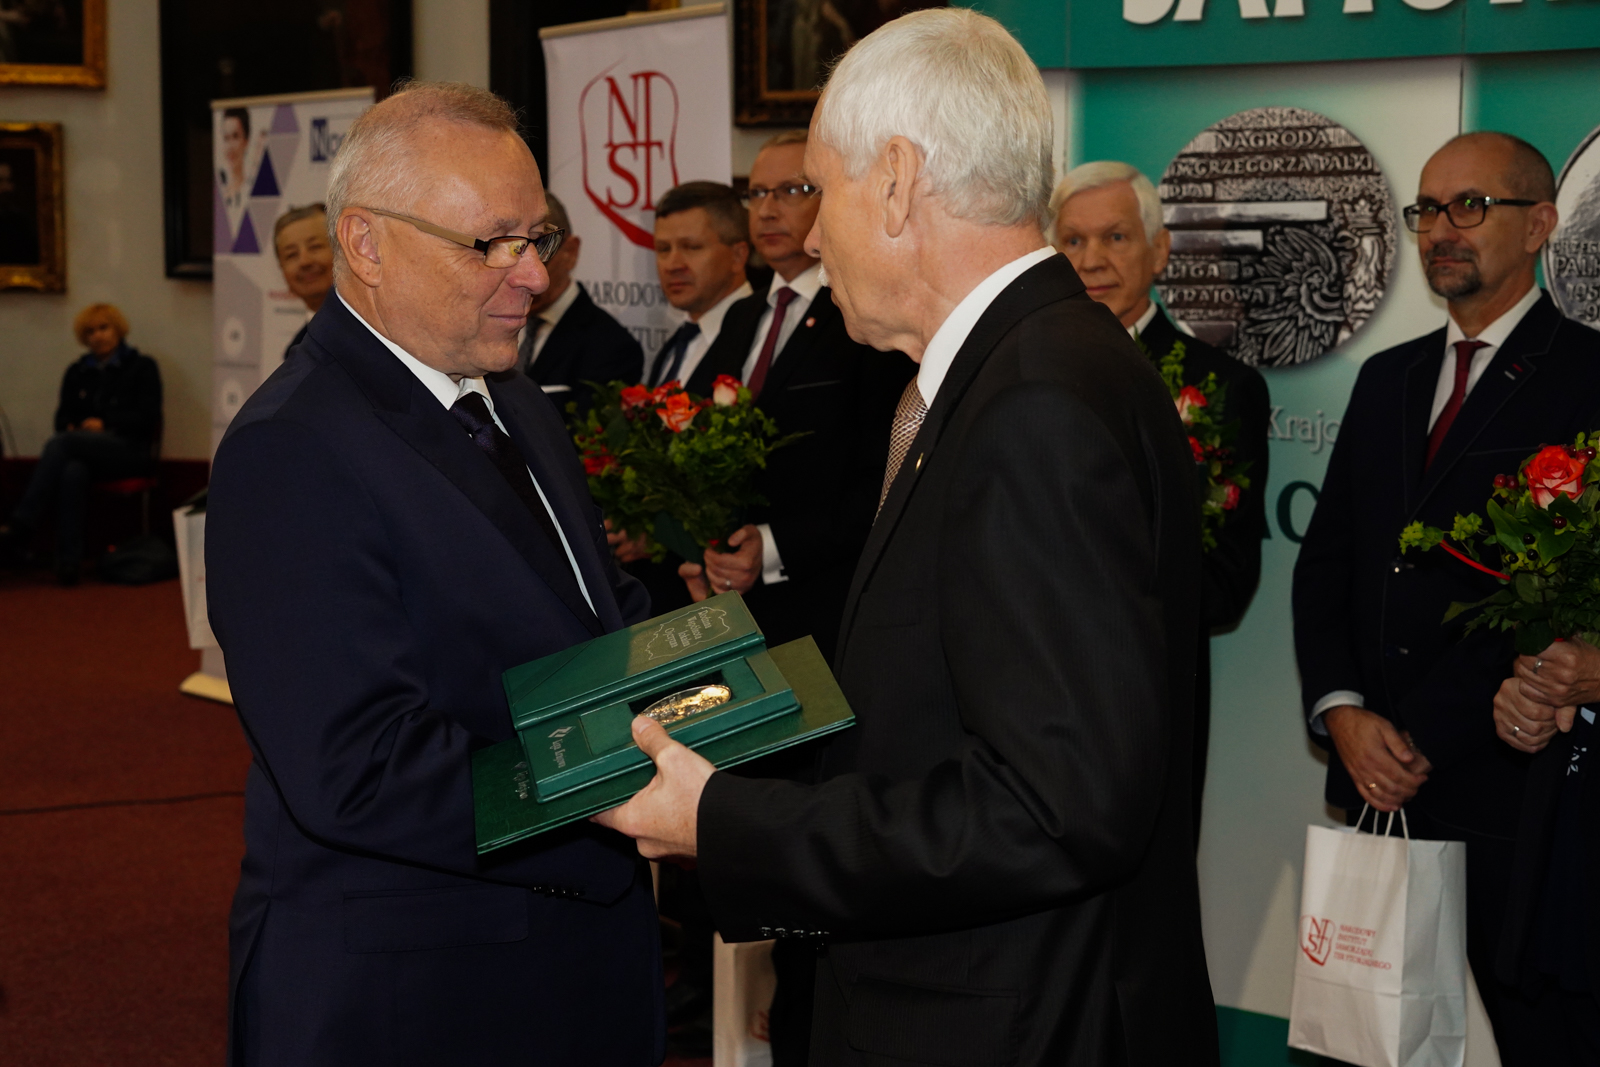 Prezes ZPP Andrzej Płonka odznaczony Samorządowym Oskarem, Starosta Józef Jodłowski z wyróżnieniem